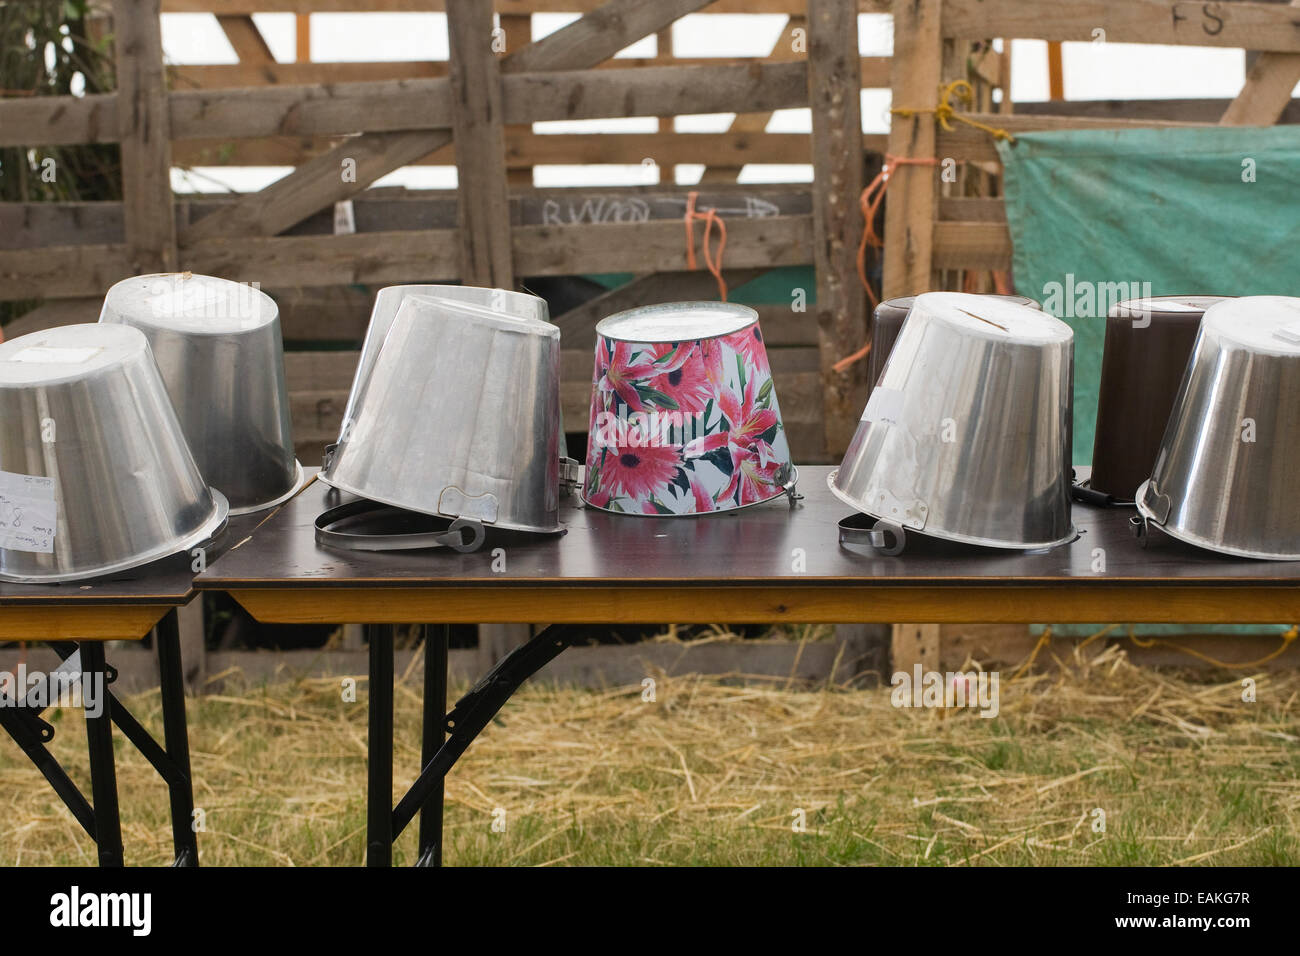 Eimer, aufgereiht auf einem Tisch für Ziege Melken bei einer Landwirtschaftsausstellung, UK. Stockfoto